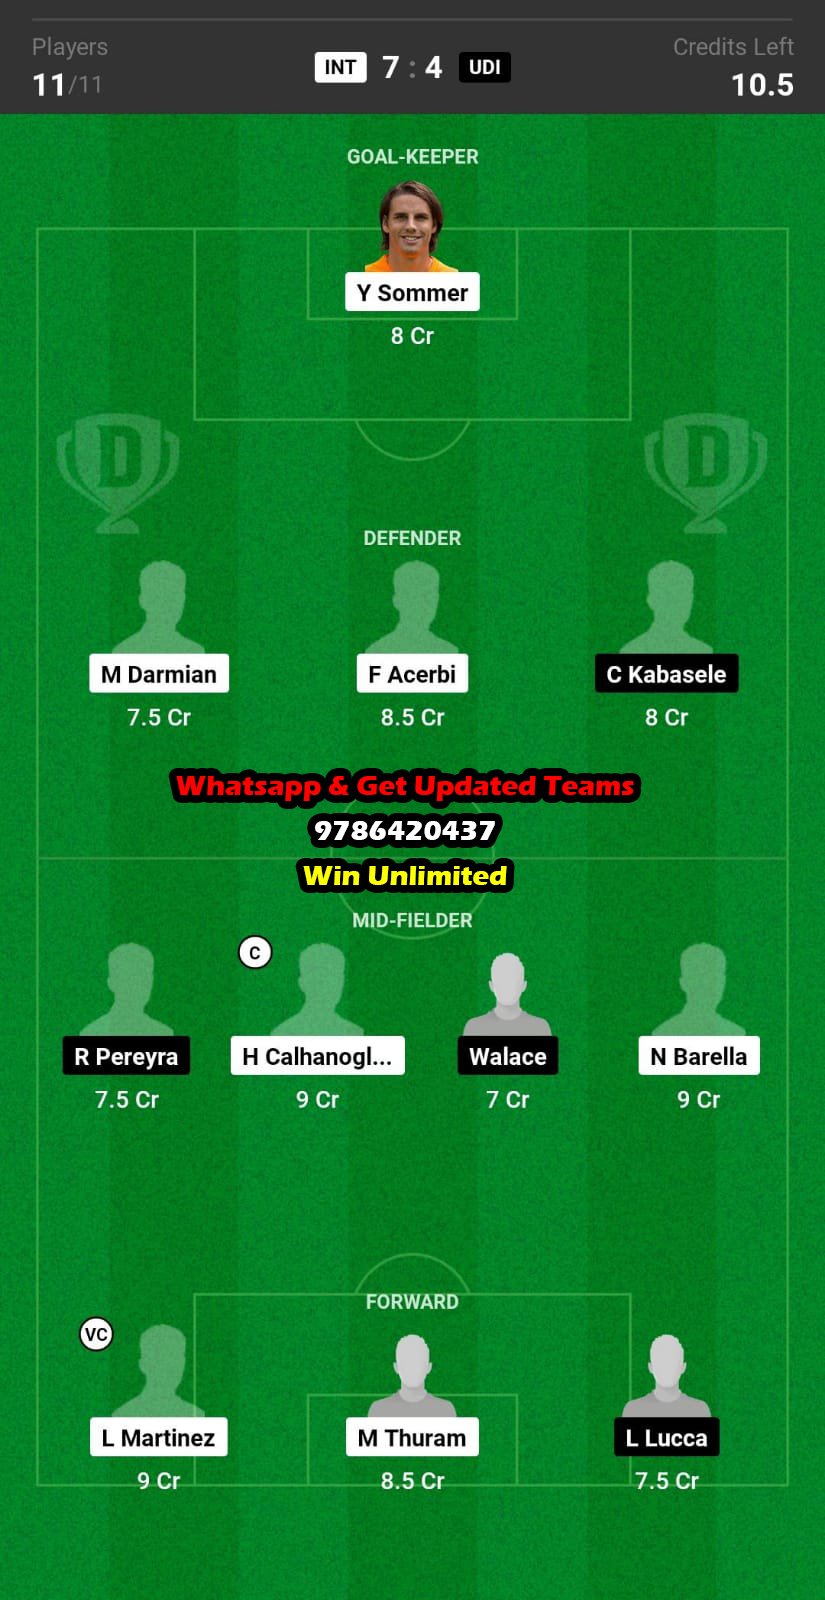 INT vs UDI Dream11 Team fantasy Prediction Serie A